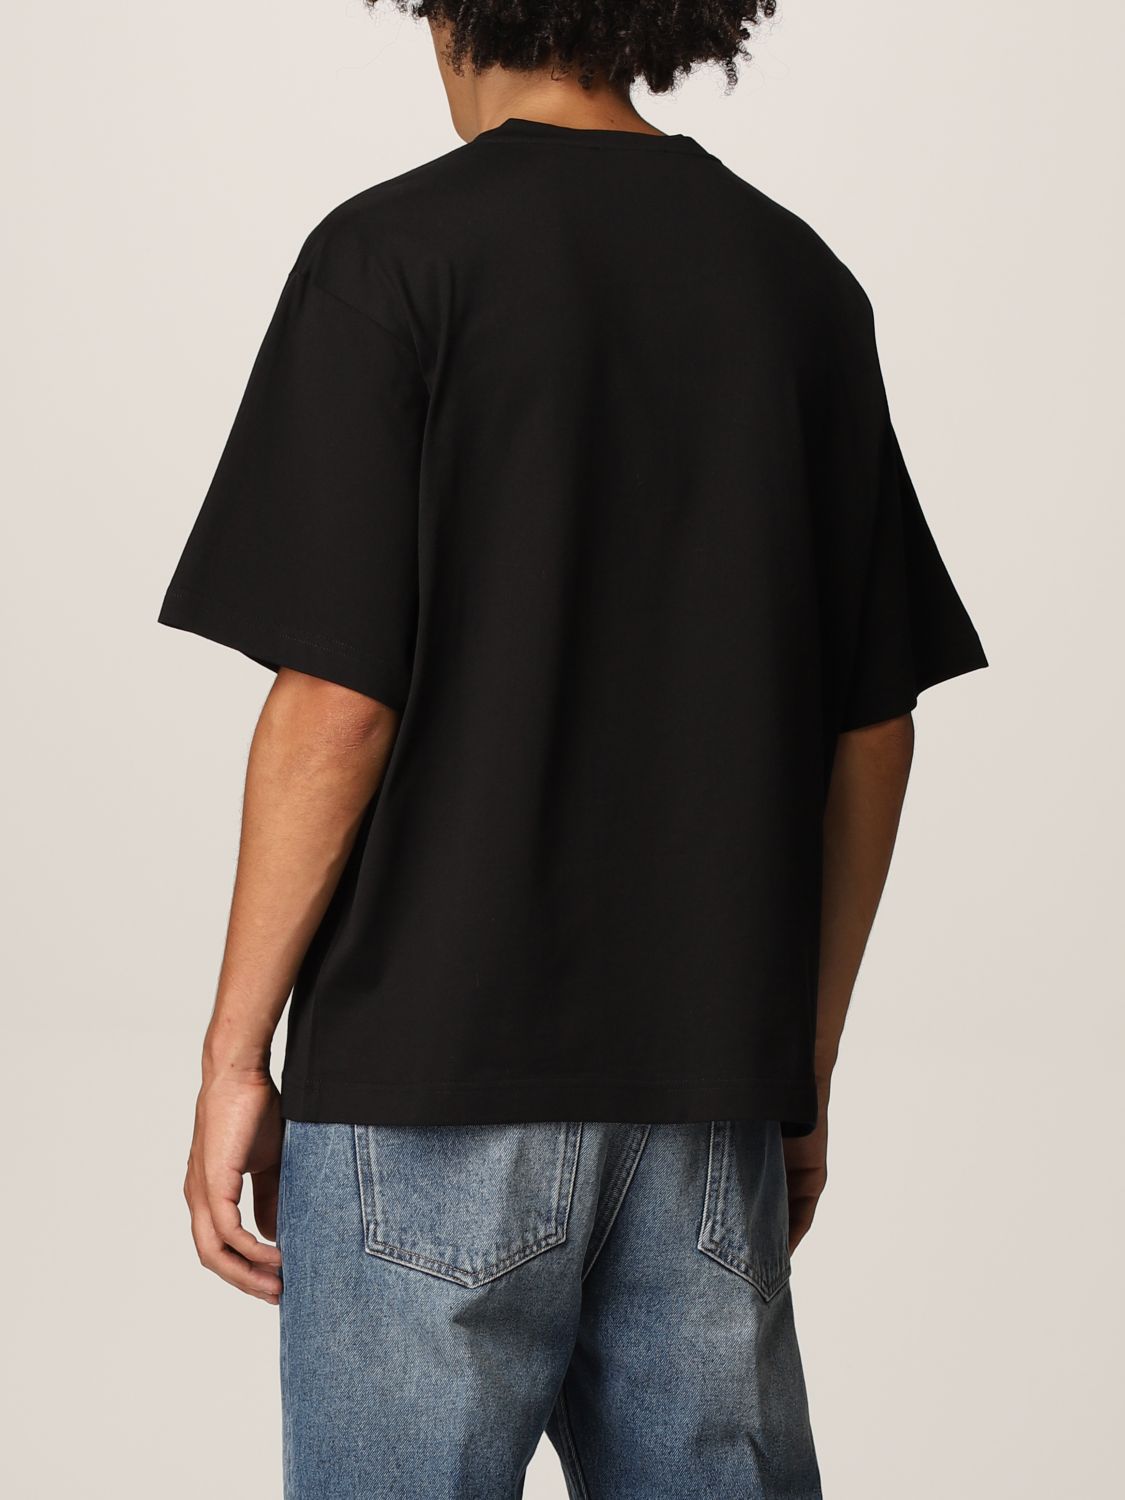 DOLCE & GABBANA: T-shirt with DG logo - Black | T-Shirt Dolce & Gabbana ...